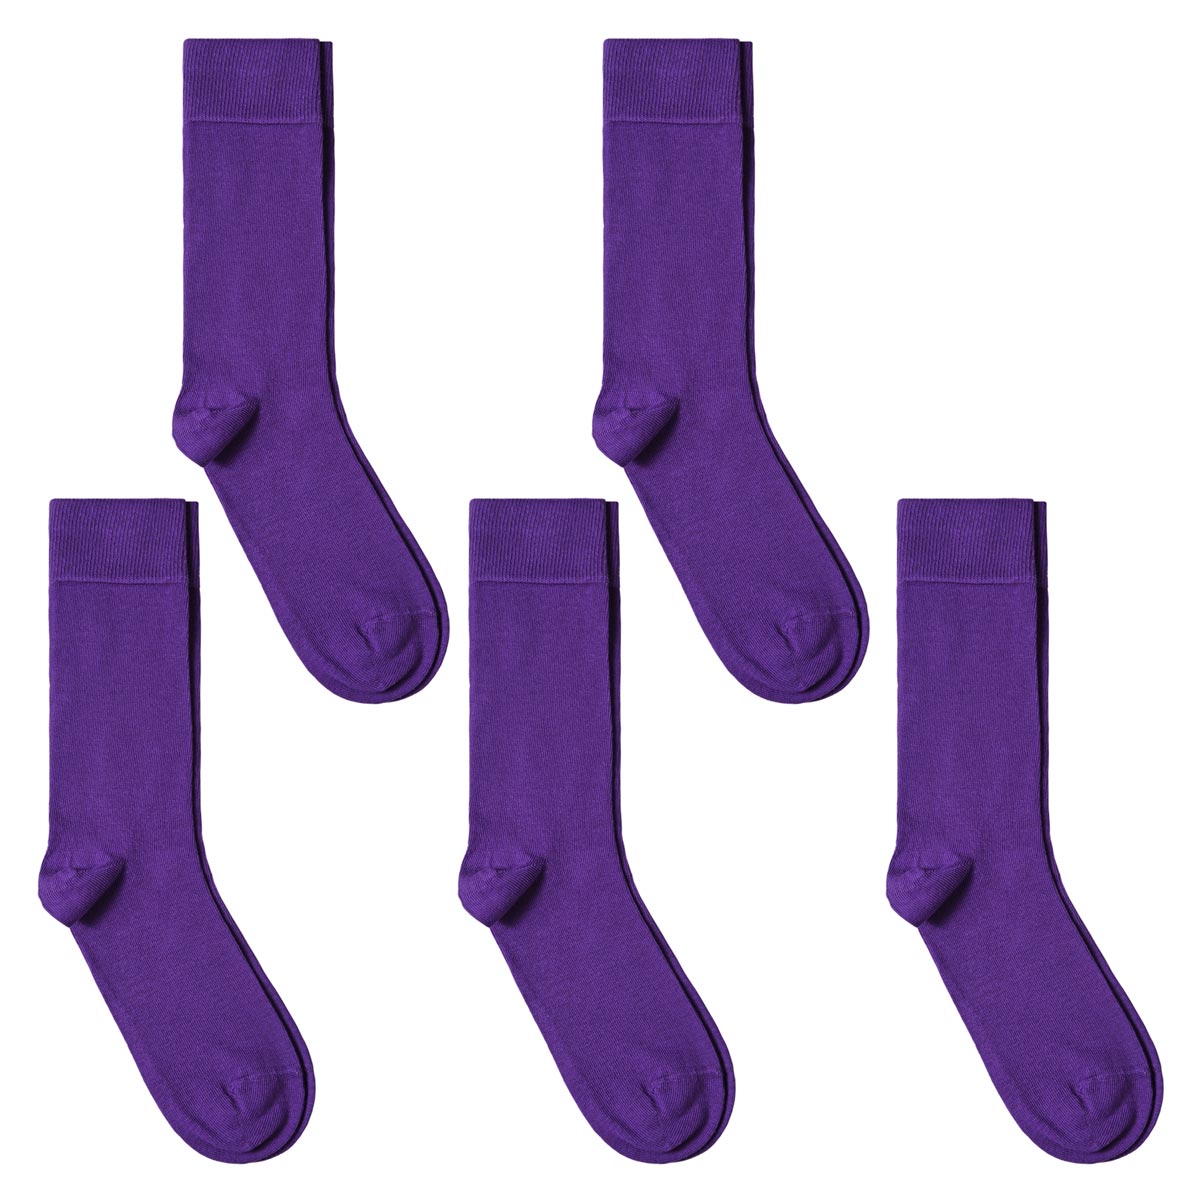 CH-00586_A12-1--_Lot-5-paires-de-chaussettes-homme-violet-unies